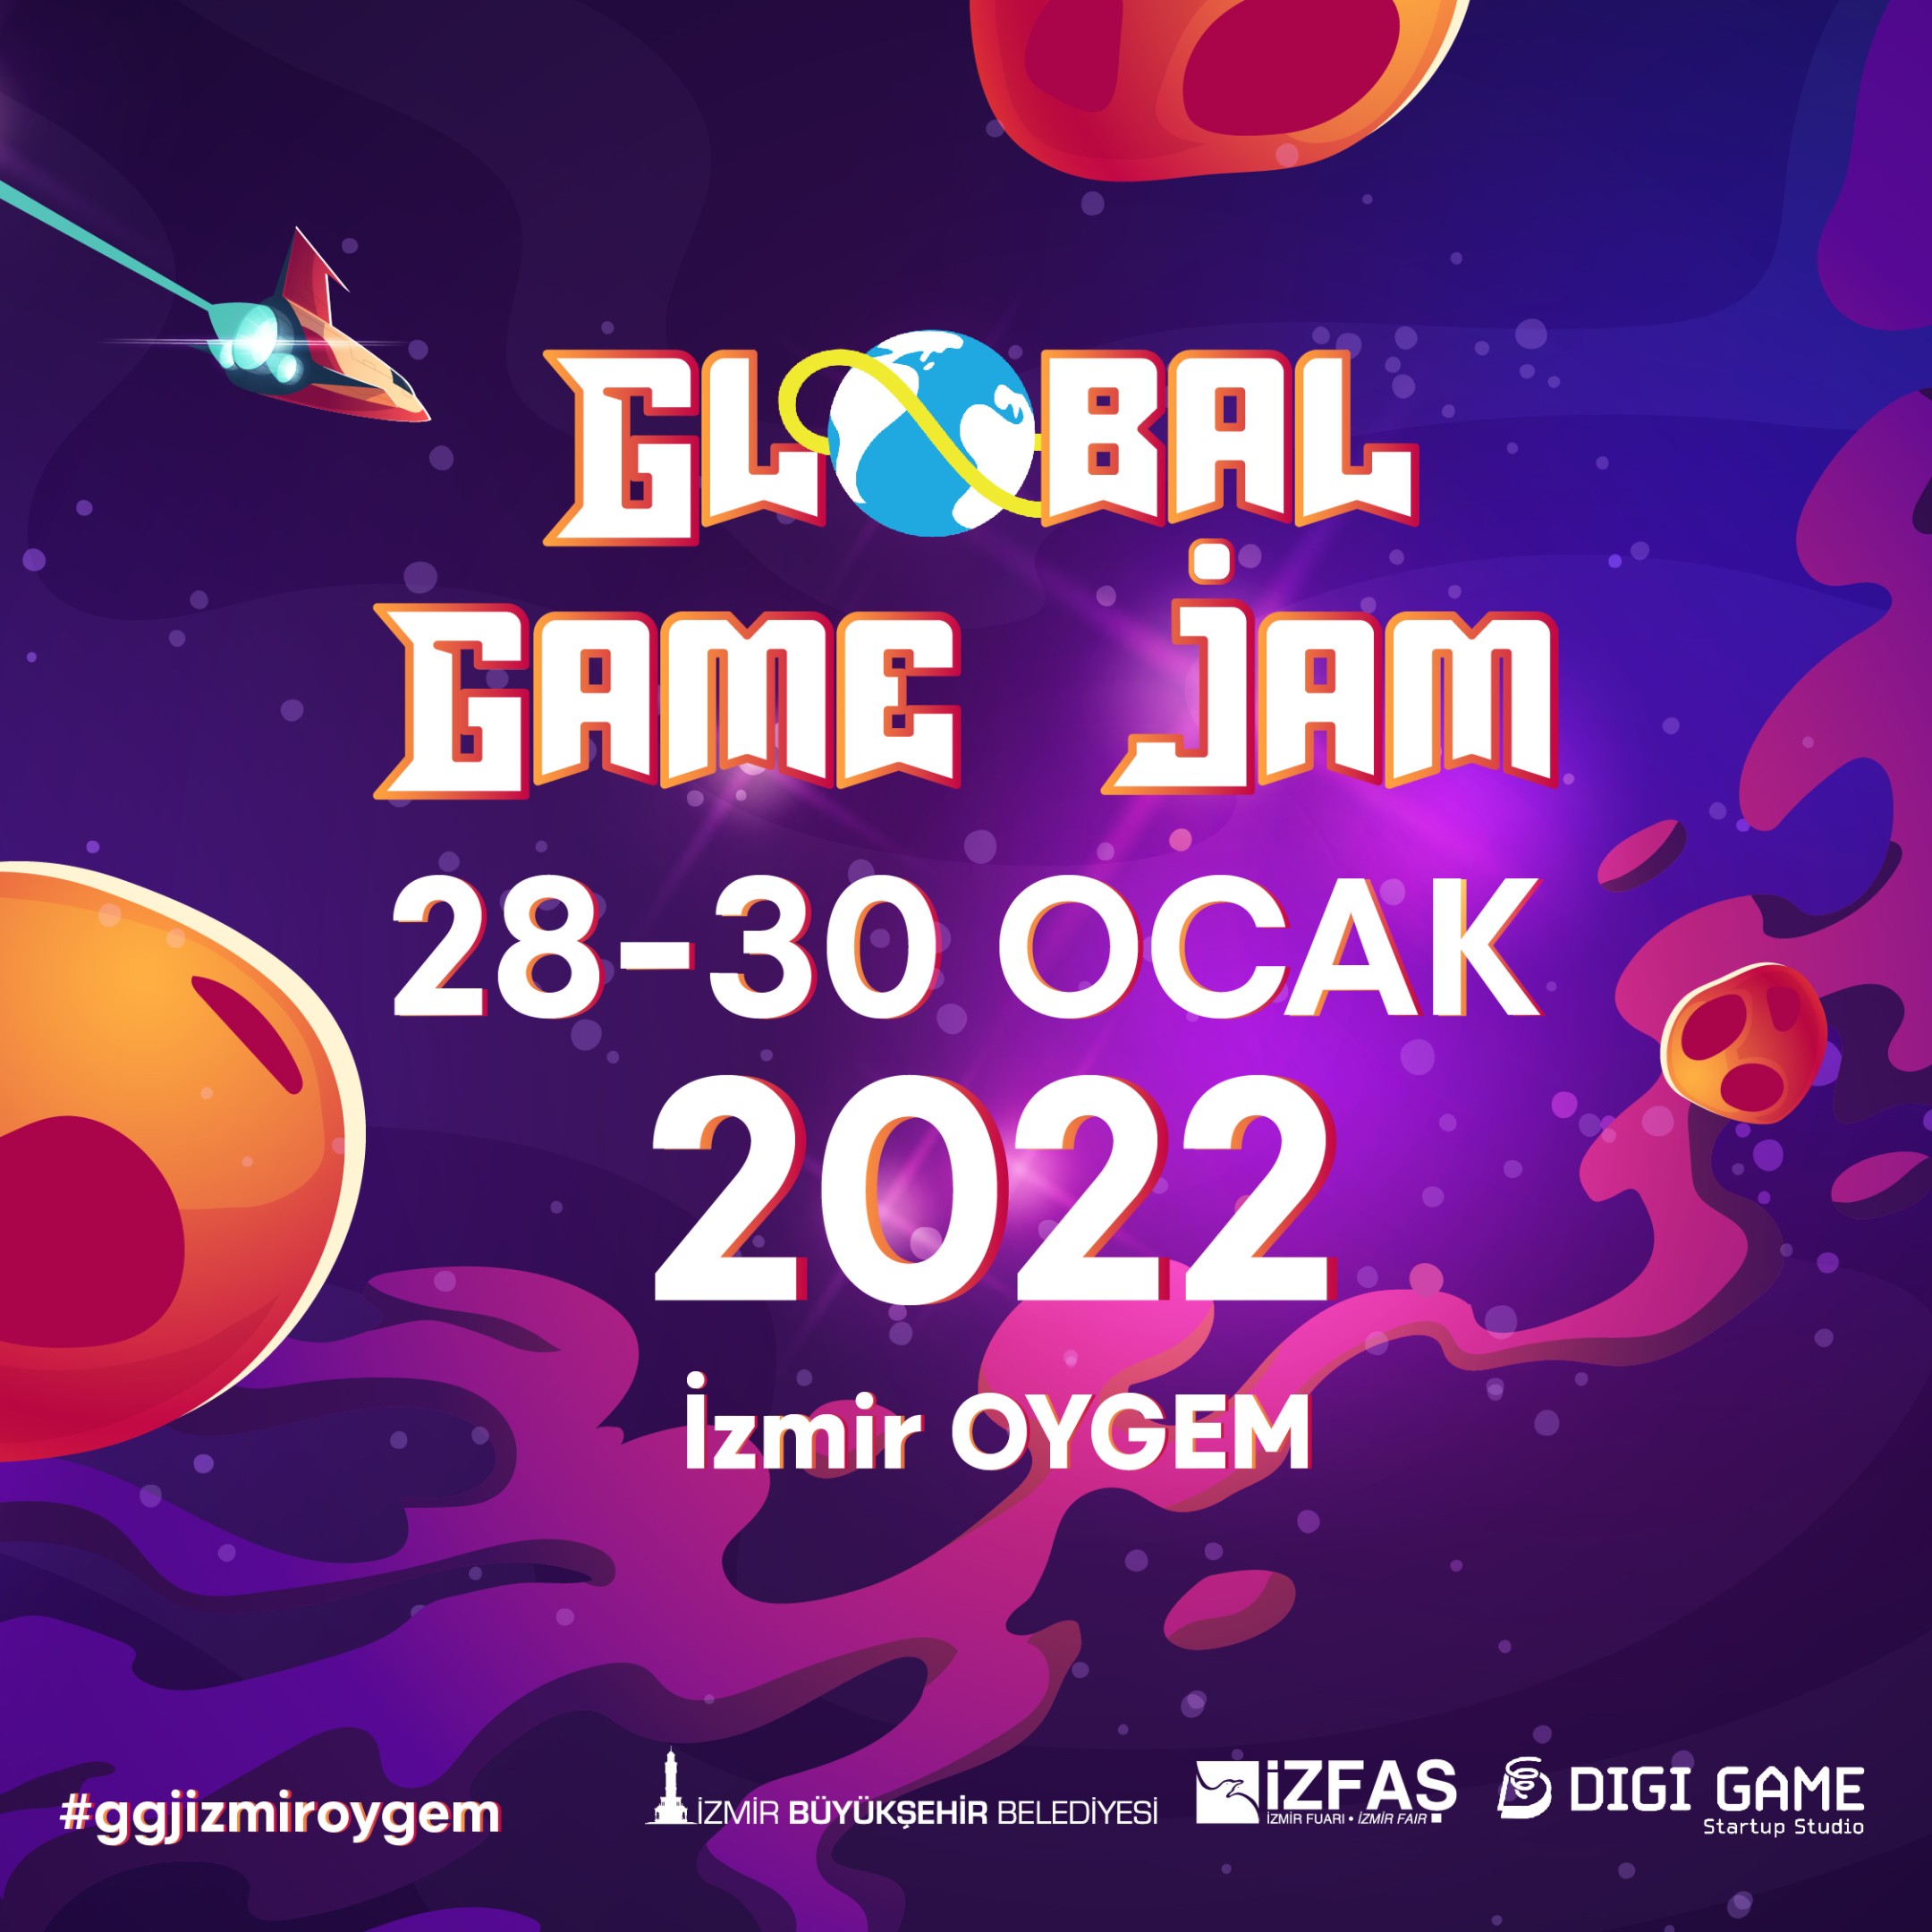 Izmir-Oyun-Gelistirme-Merkezi-Global-Game-Jami-Agirlayacak.jpg